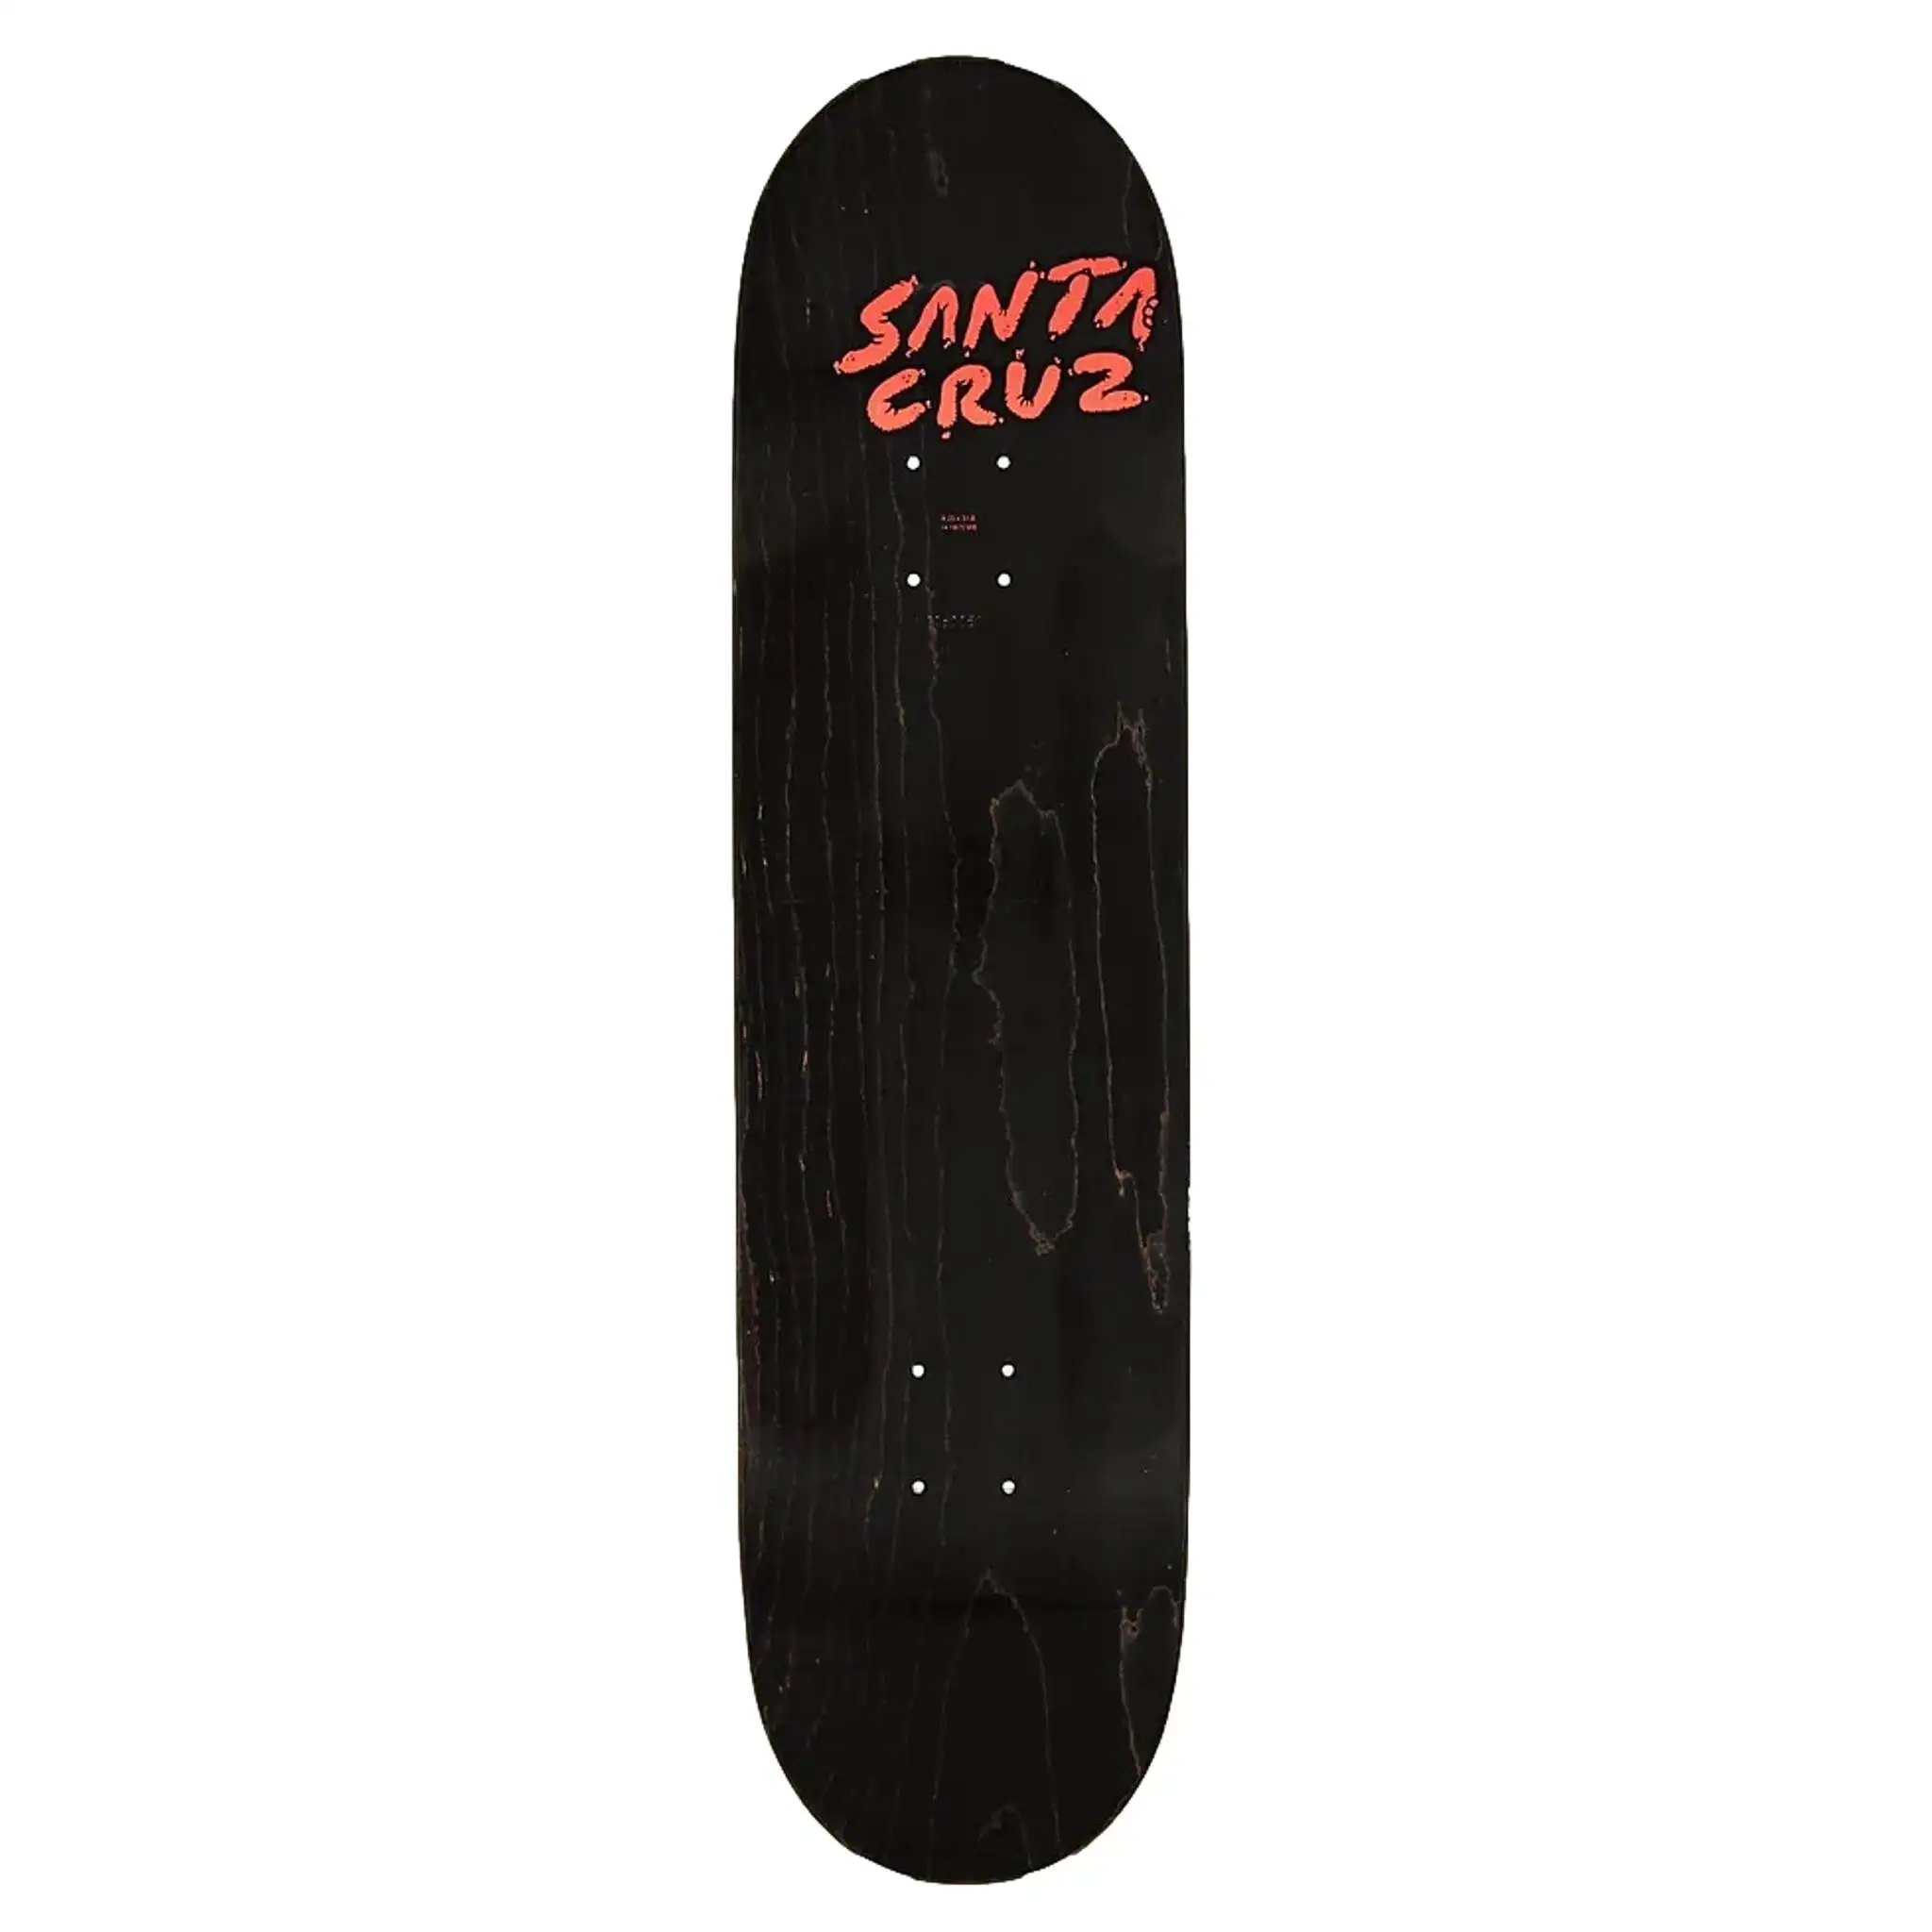 Santa Cruz Braun River Skateboard deck 8.25